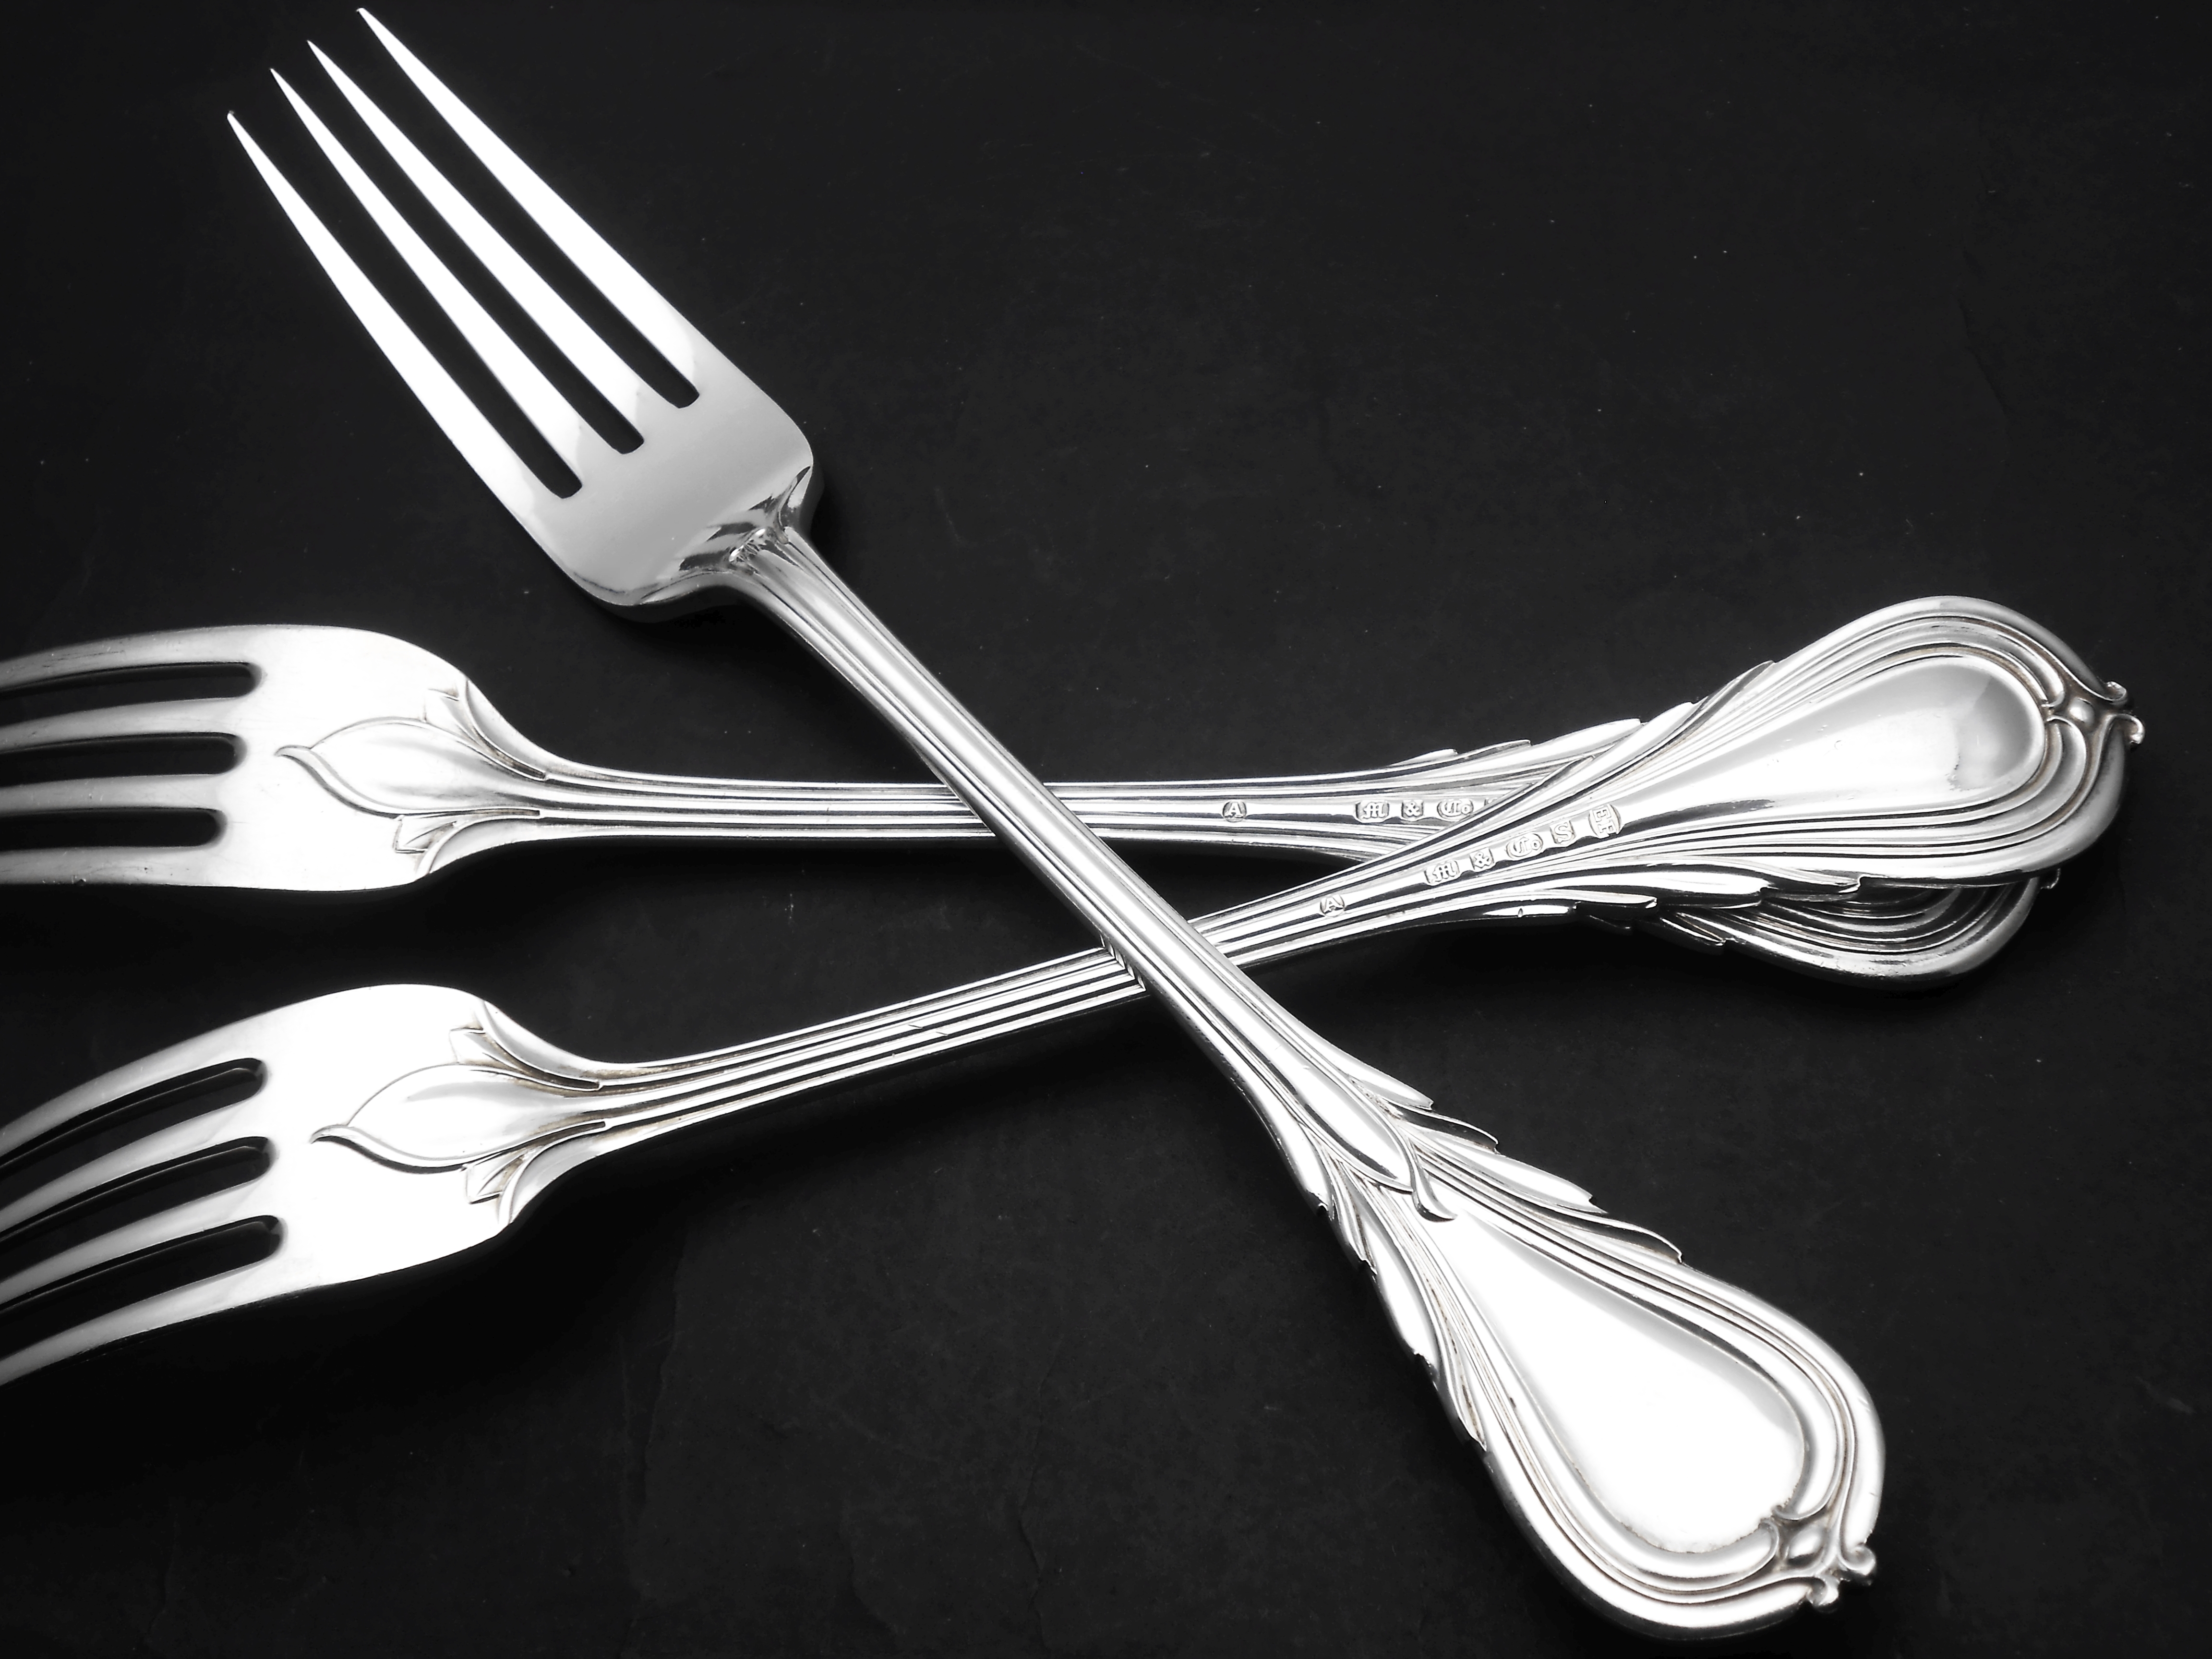 Lily pattern cutlery / flatware